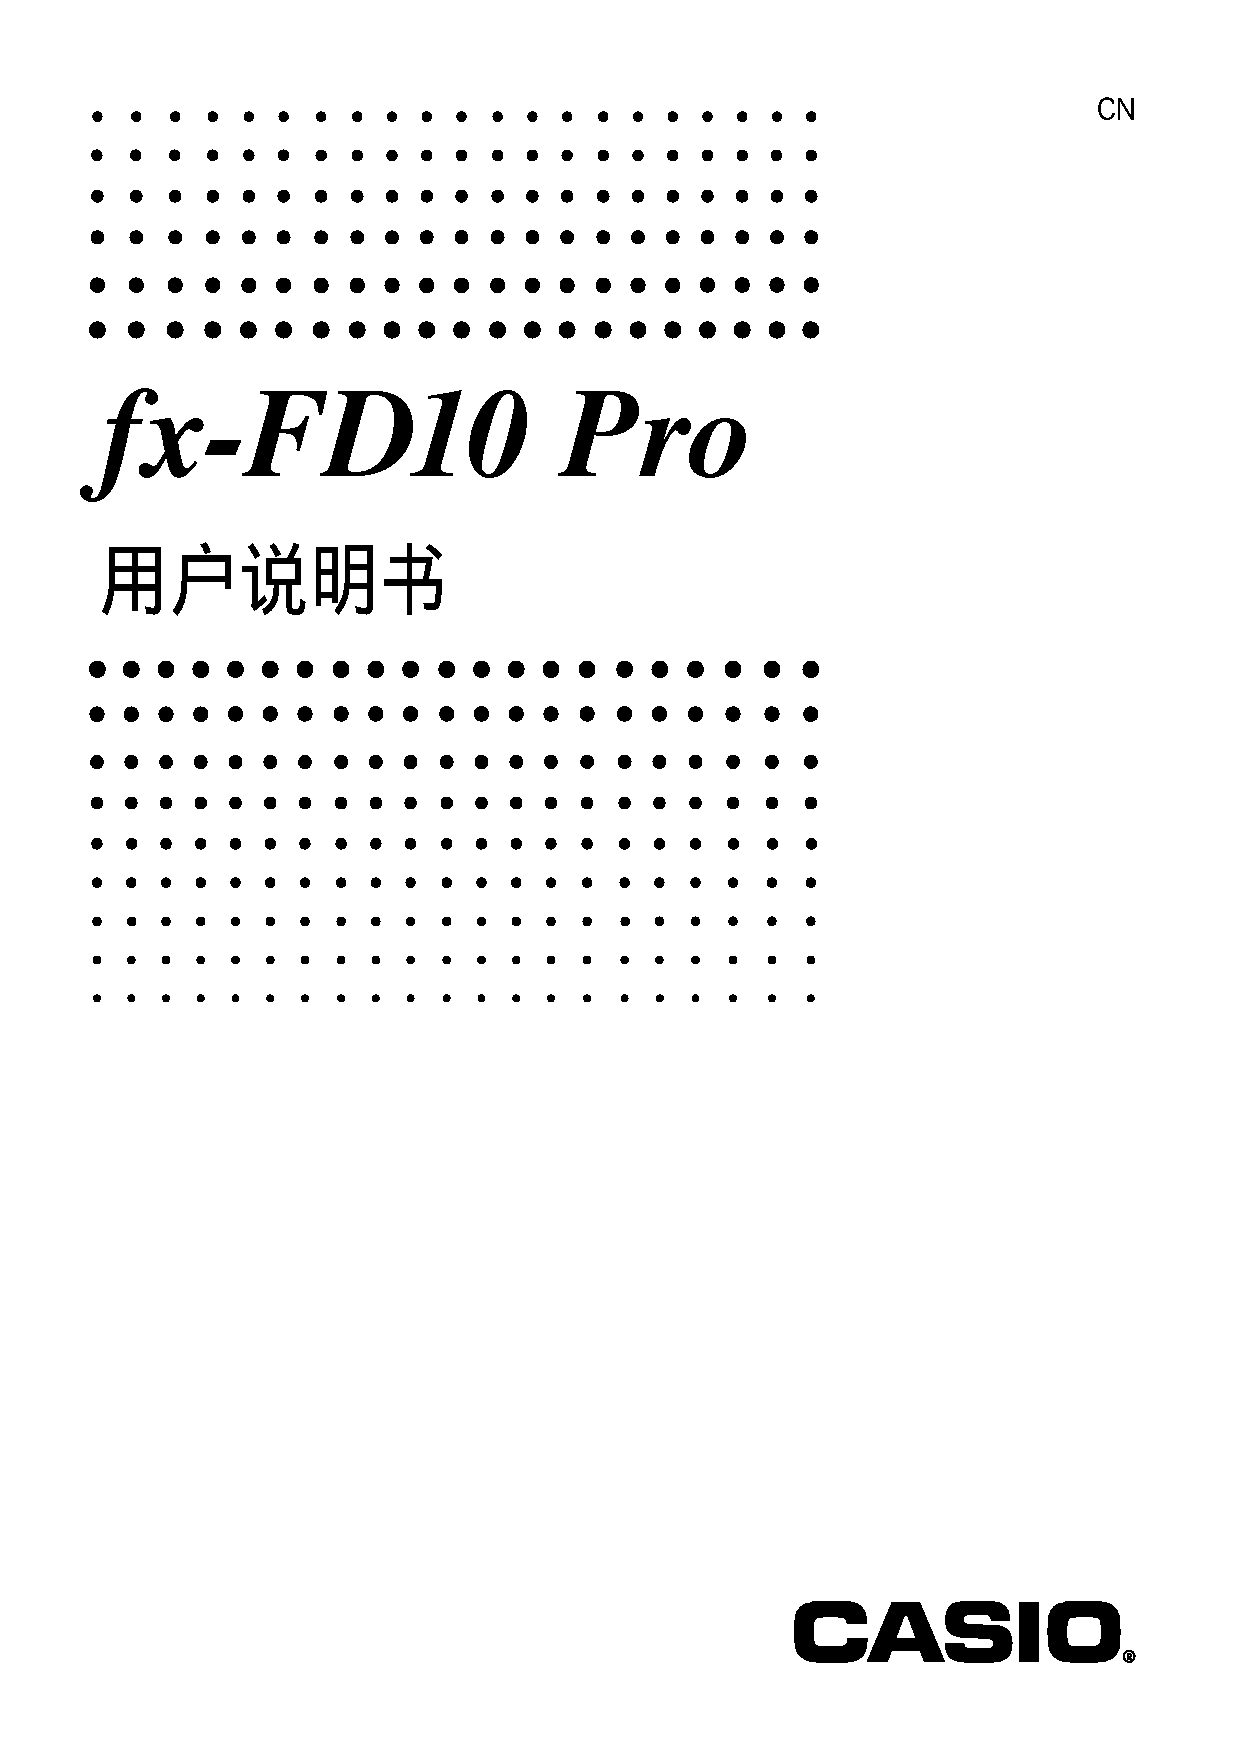 卡西欧 Casio FX-FD10 PRO 使用说明书 封面